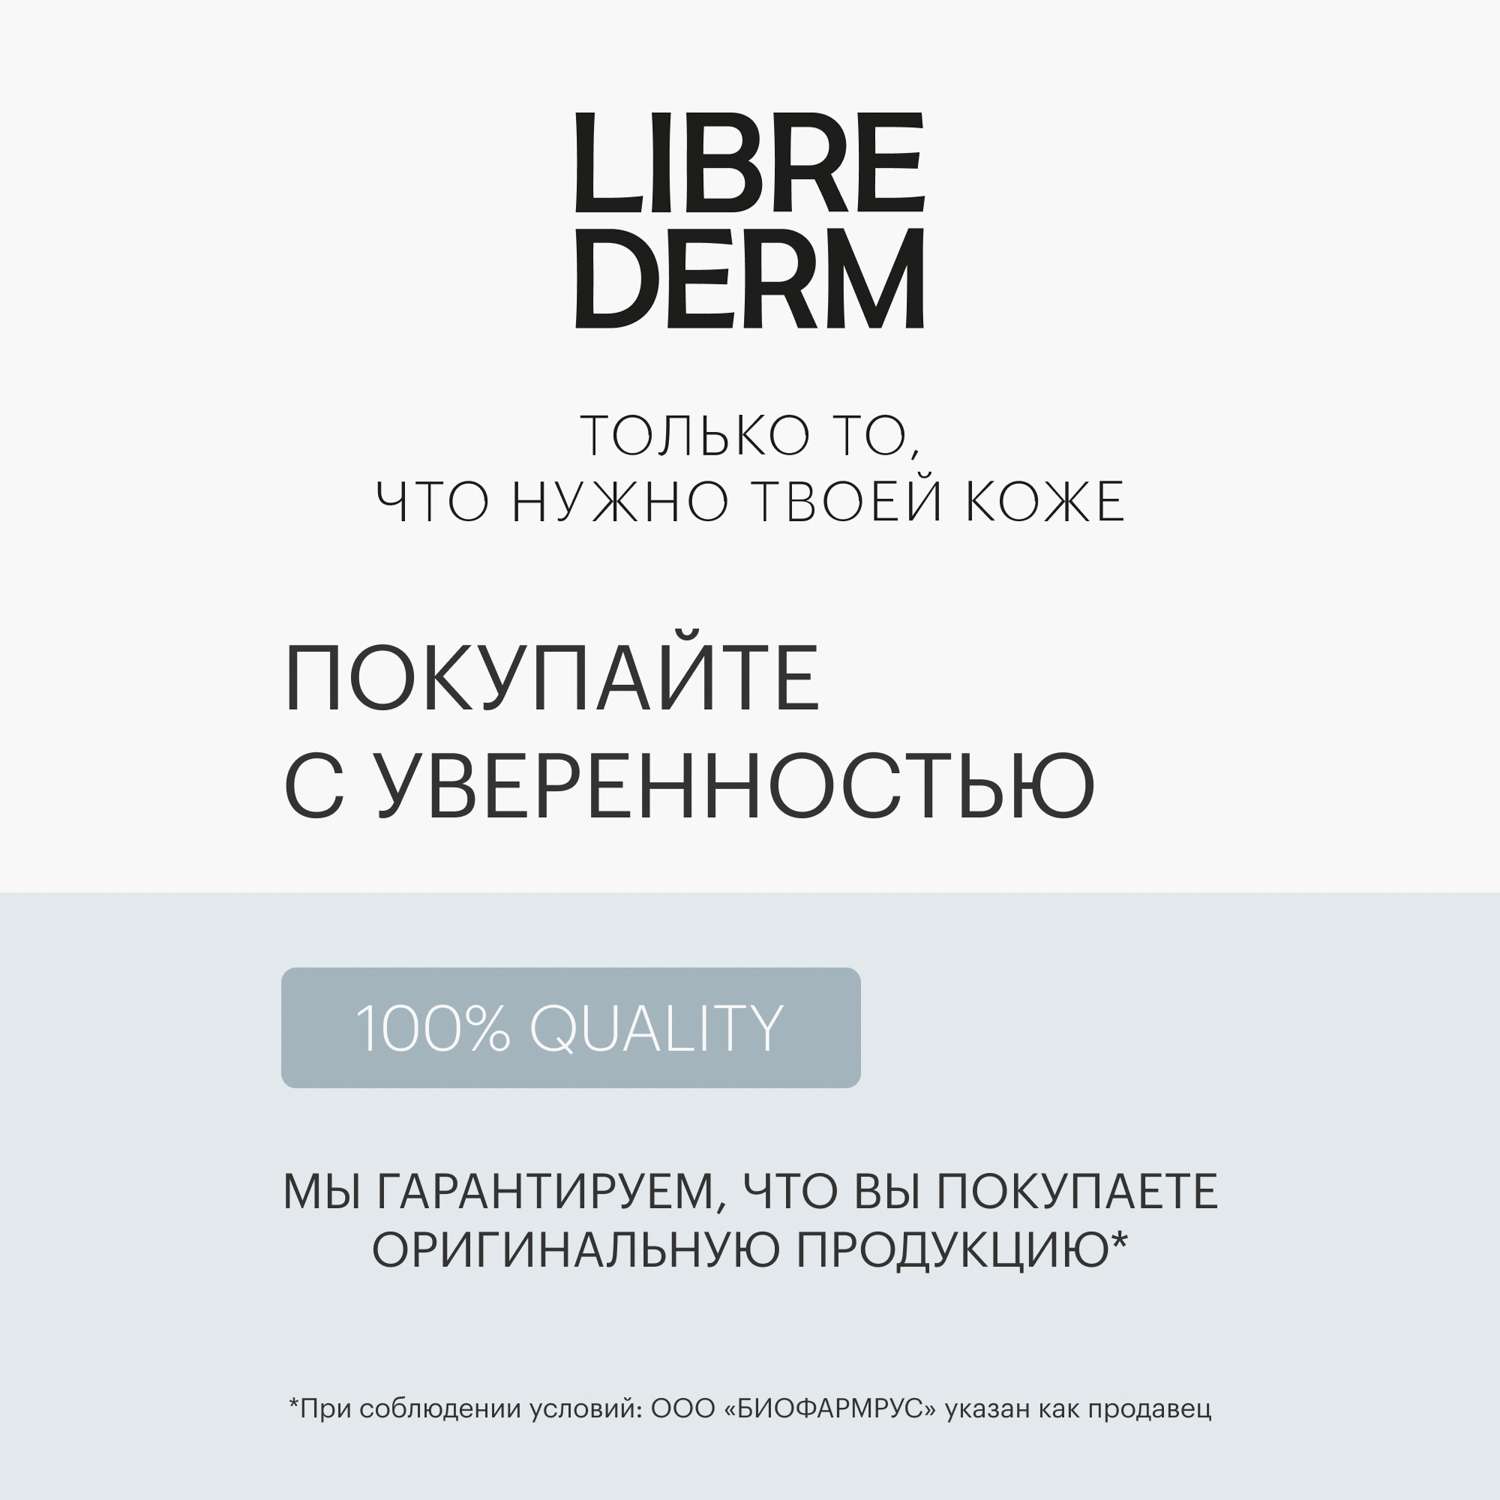 Крем 400 мл Librederm CERAFAVIT крем липидовосстанавливающий с церамидами и пребиотиком для лица и тела 0+ - фото 11